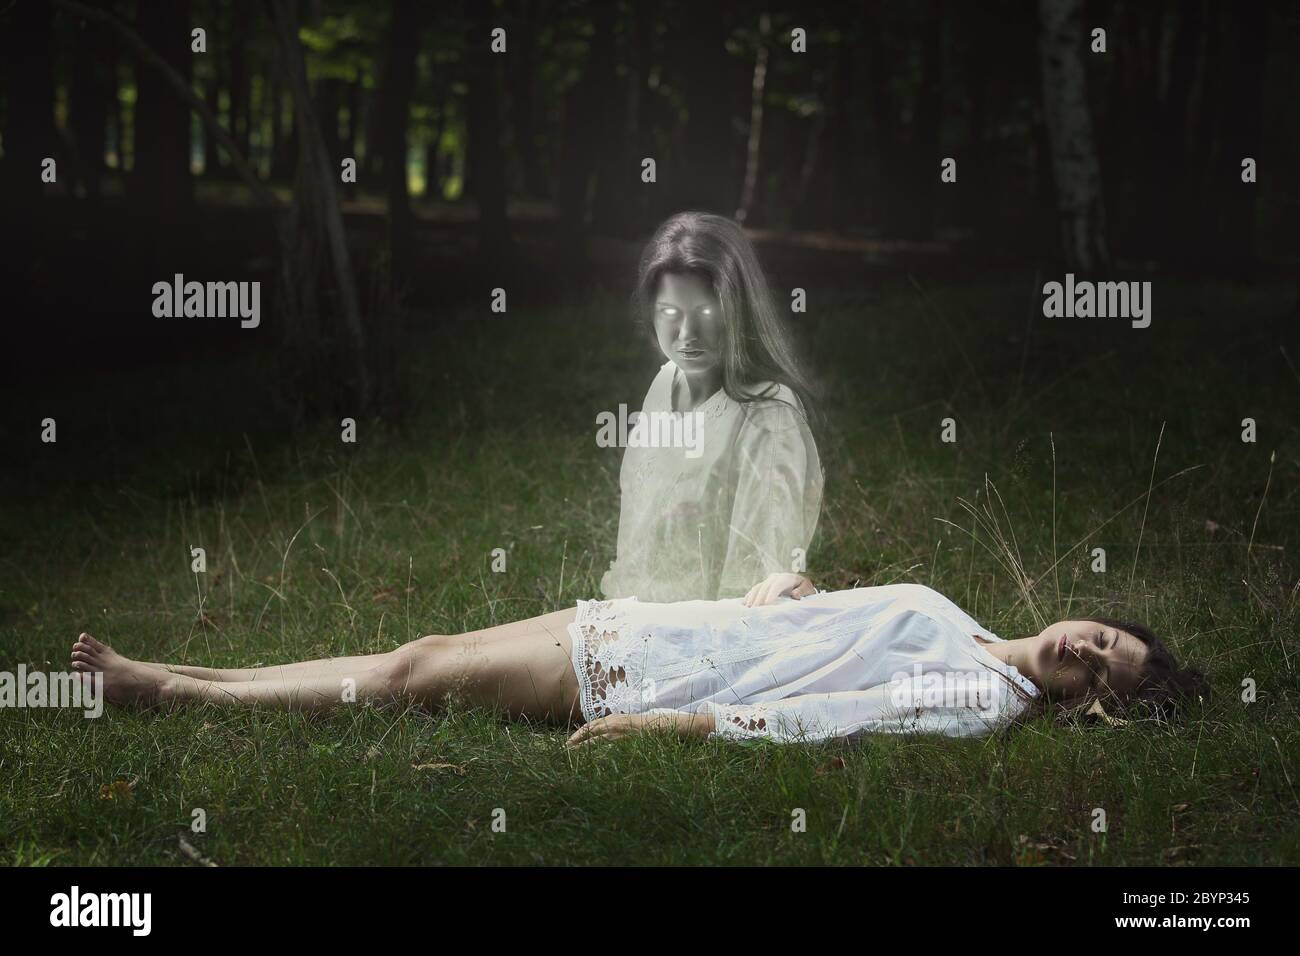 Unheimliche Geist eines schlafenden Mädchen schaut direkt in die Kamera.  Horror und Halloween Konzept Stockfotografie - Alamy